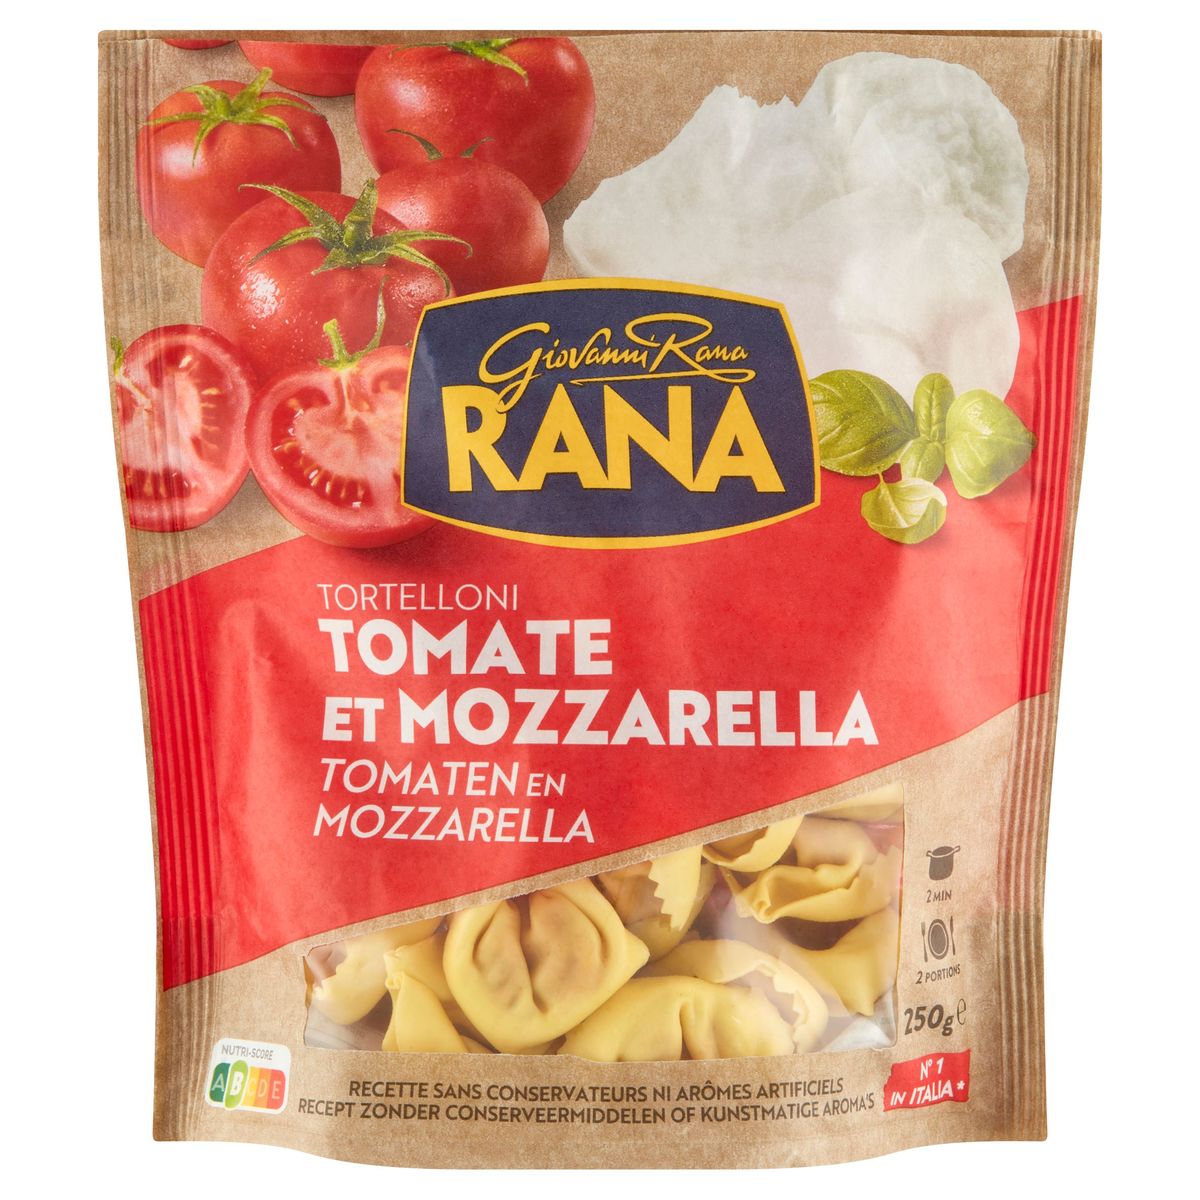 Giovanni RANA Ravioli Tomato & Mozzarella 250g x 8